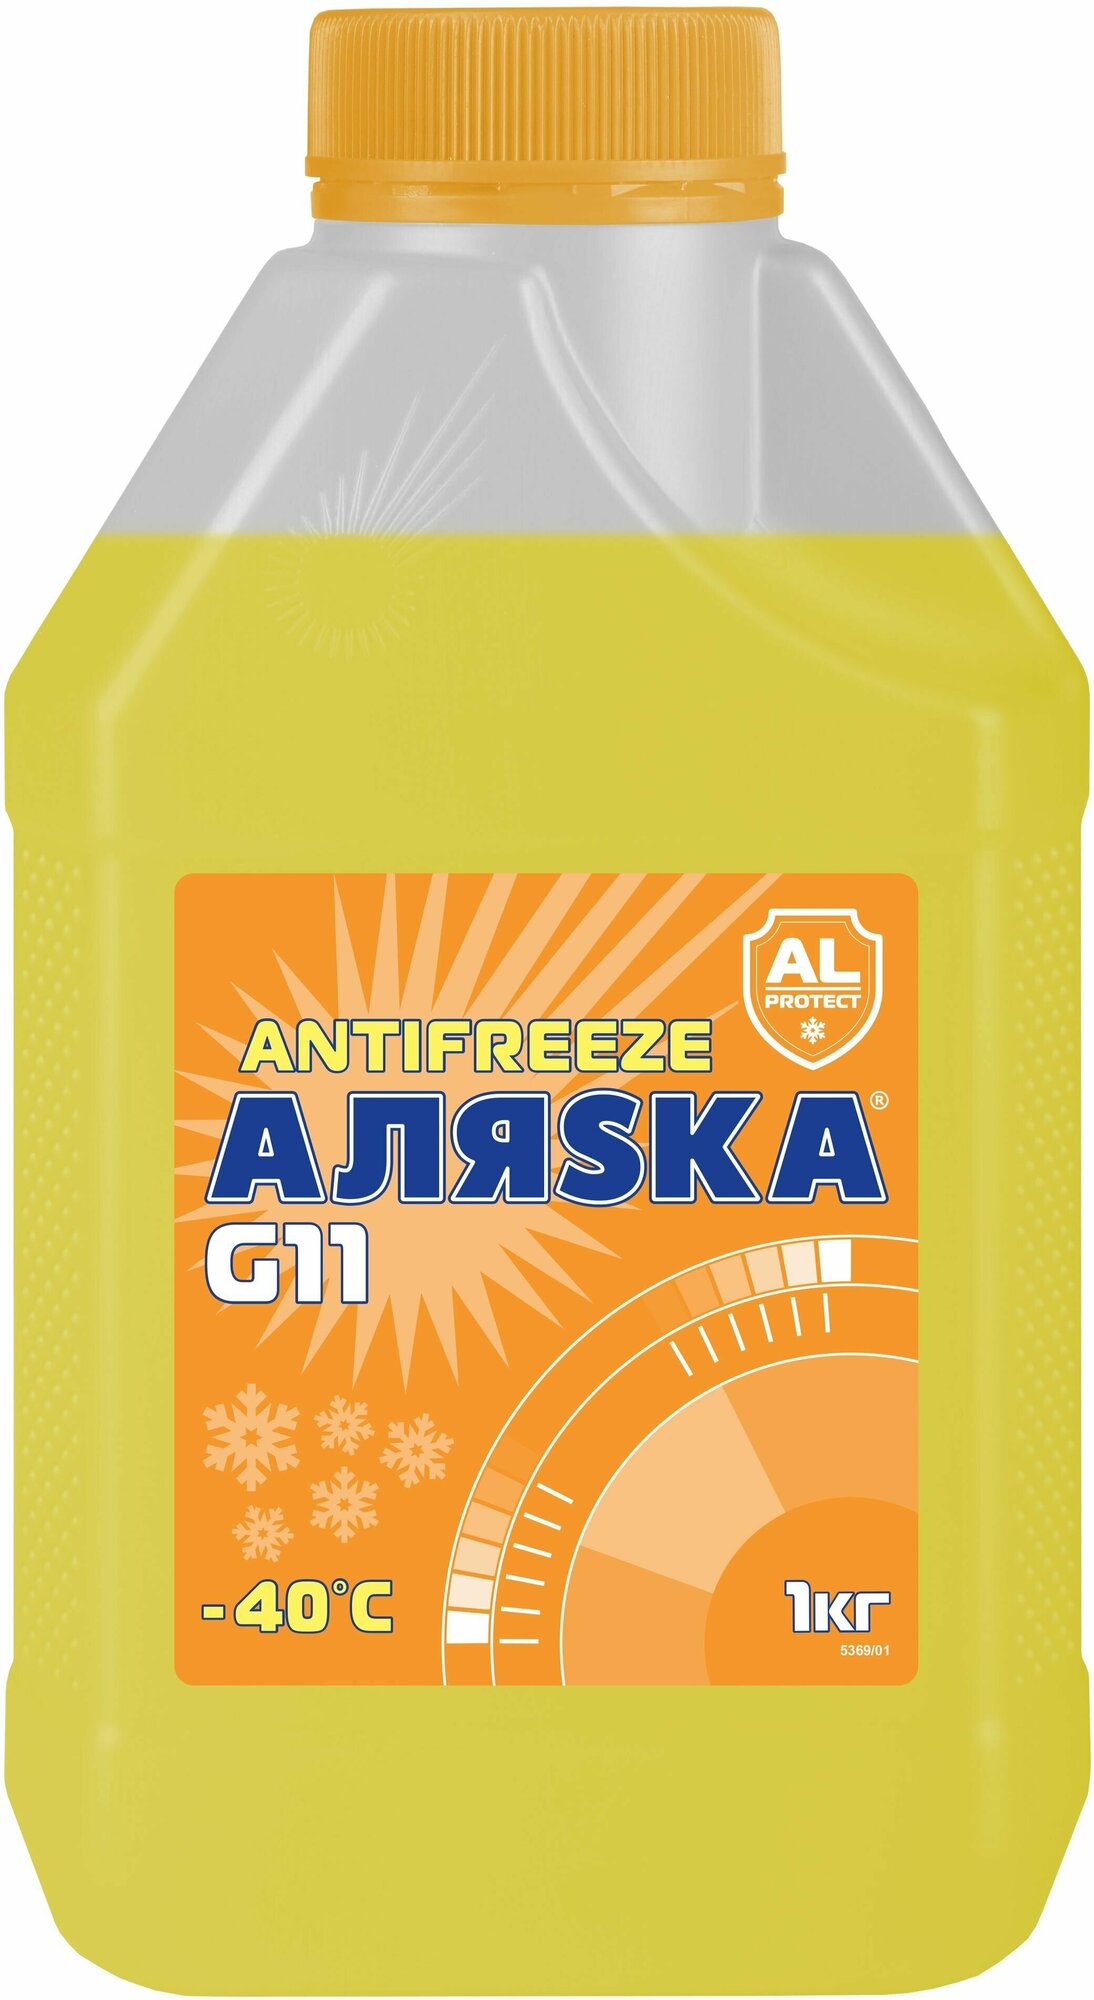 Антифриз Аляsка желтый А-40 G11, 1 кг